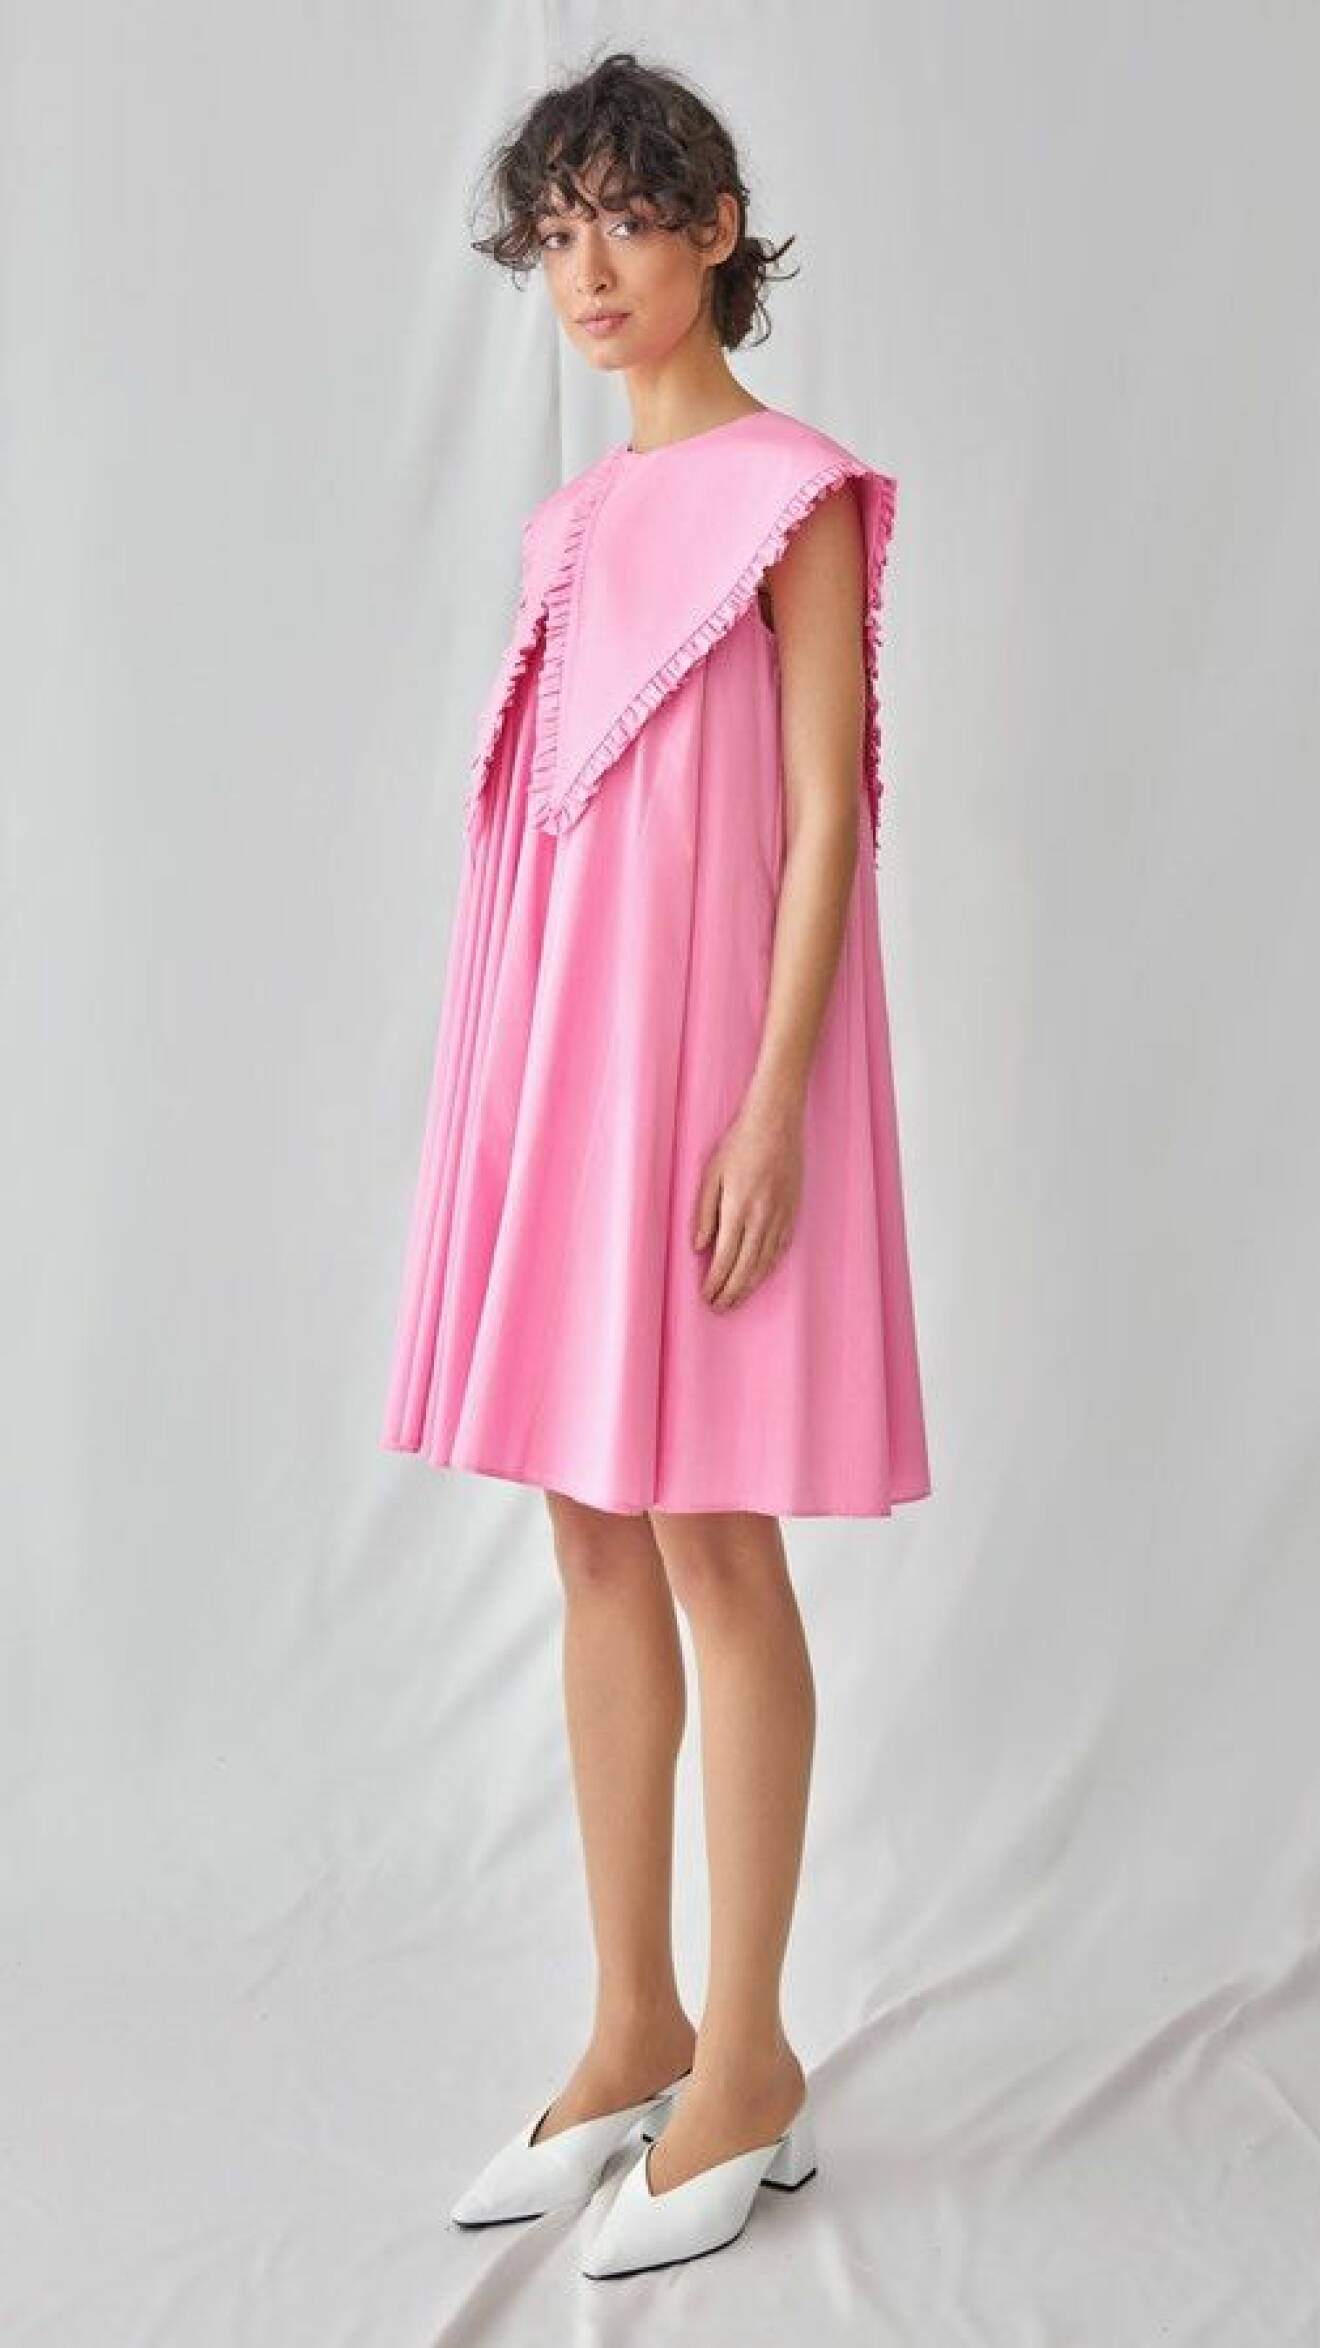 Modell med rosa klänning med en oversizad krage i samma färg som klänningen. Kragen går dock att plocka av. Krage från Seezona.